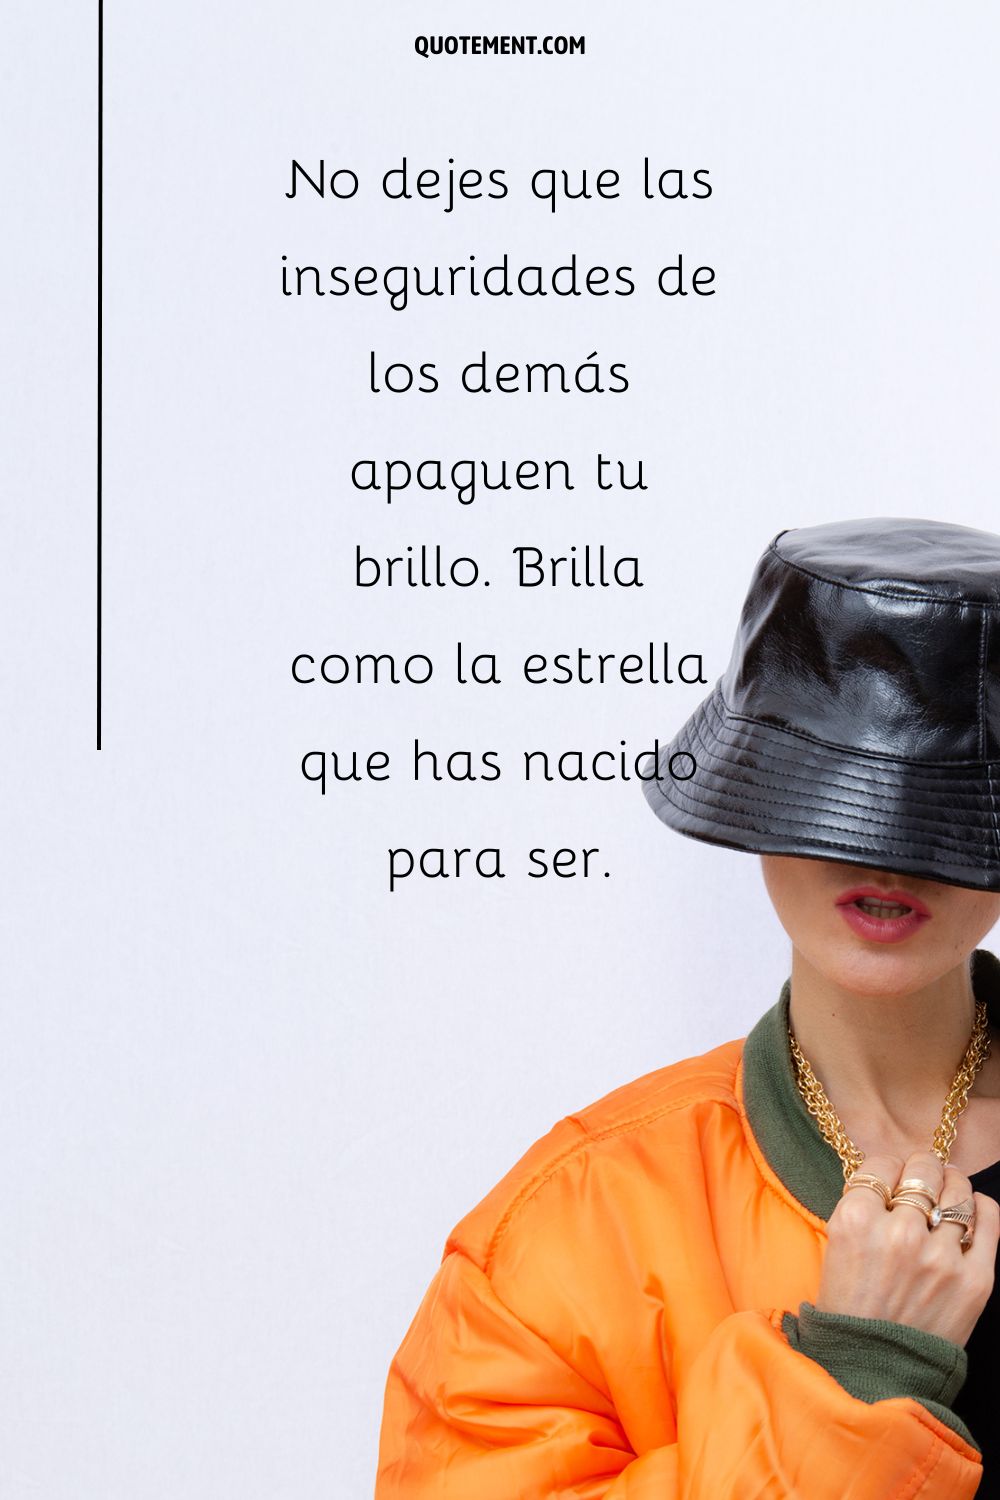 una chica con una chaqueta naranja y un sombrero negro que representa la actitud superior captio